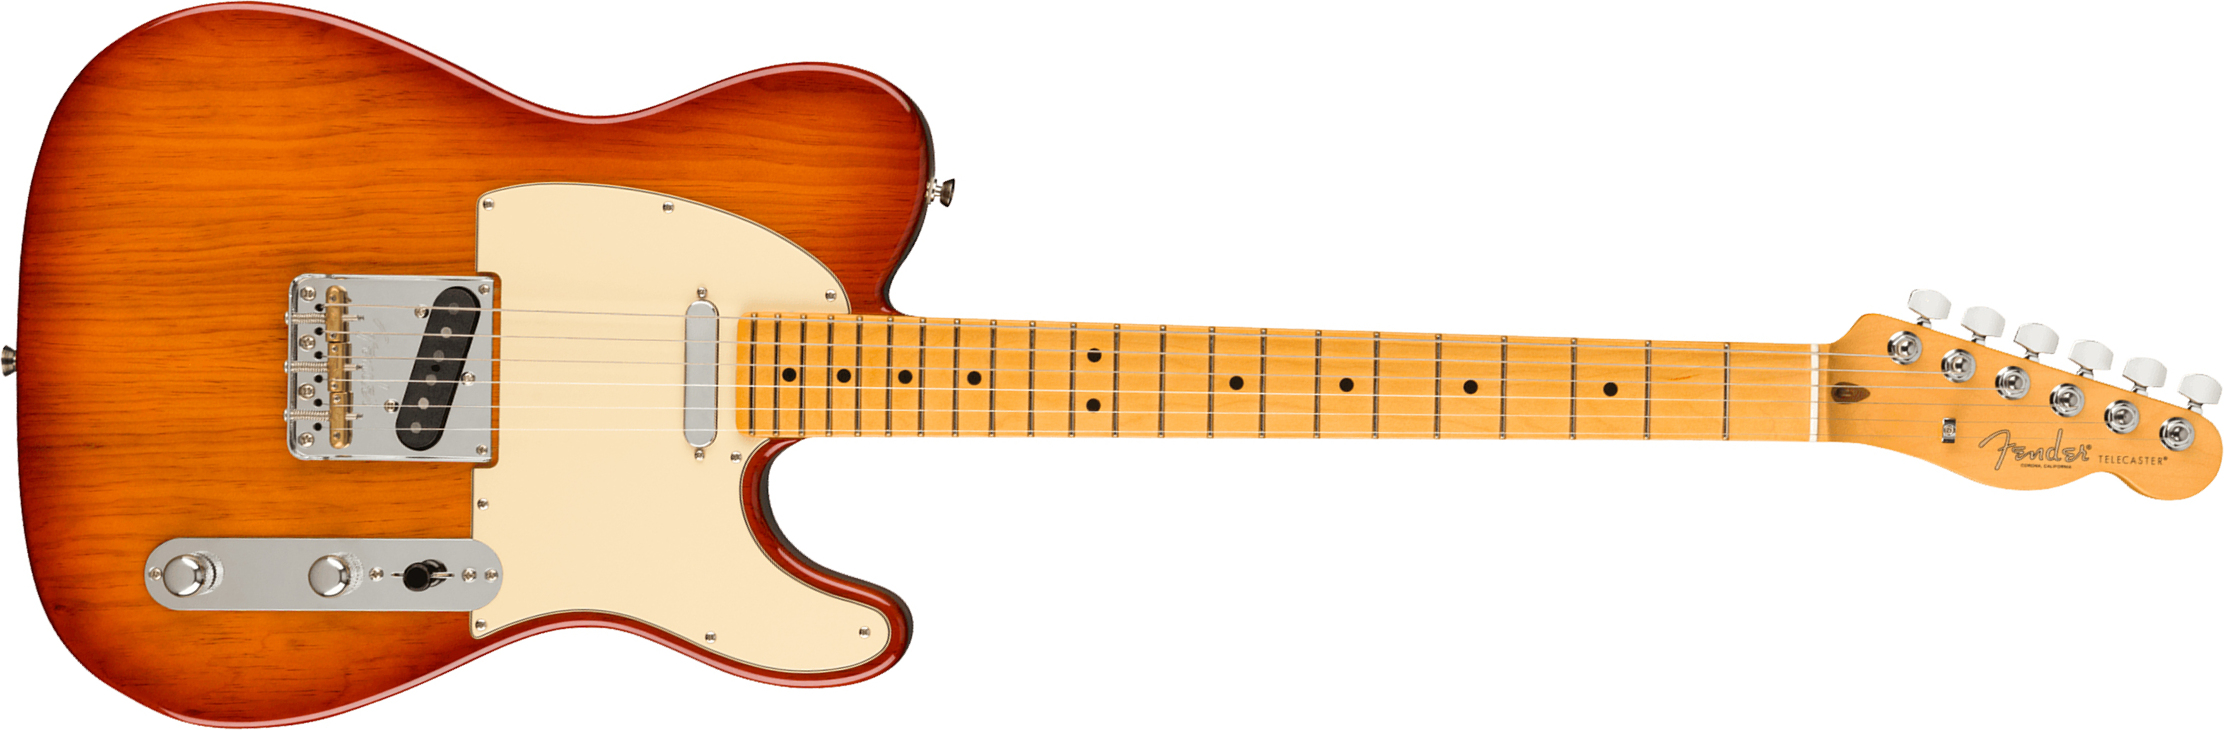 Fender Tele American Professional Ii Usa Mn - Sienna Sunburst - Televorm elektrische gitaar - Main picture